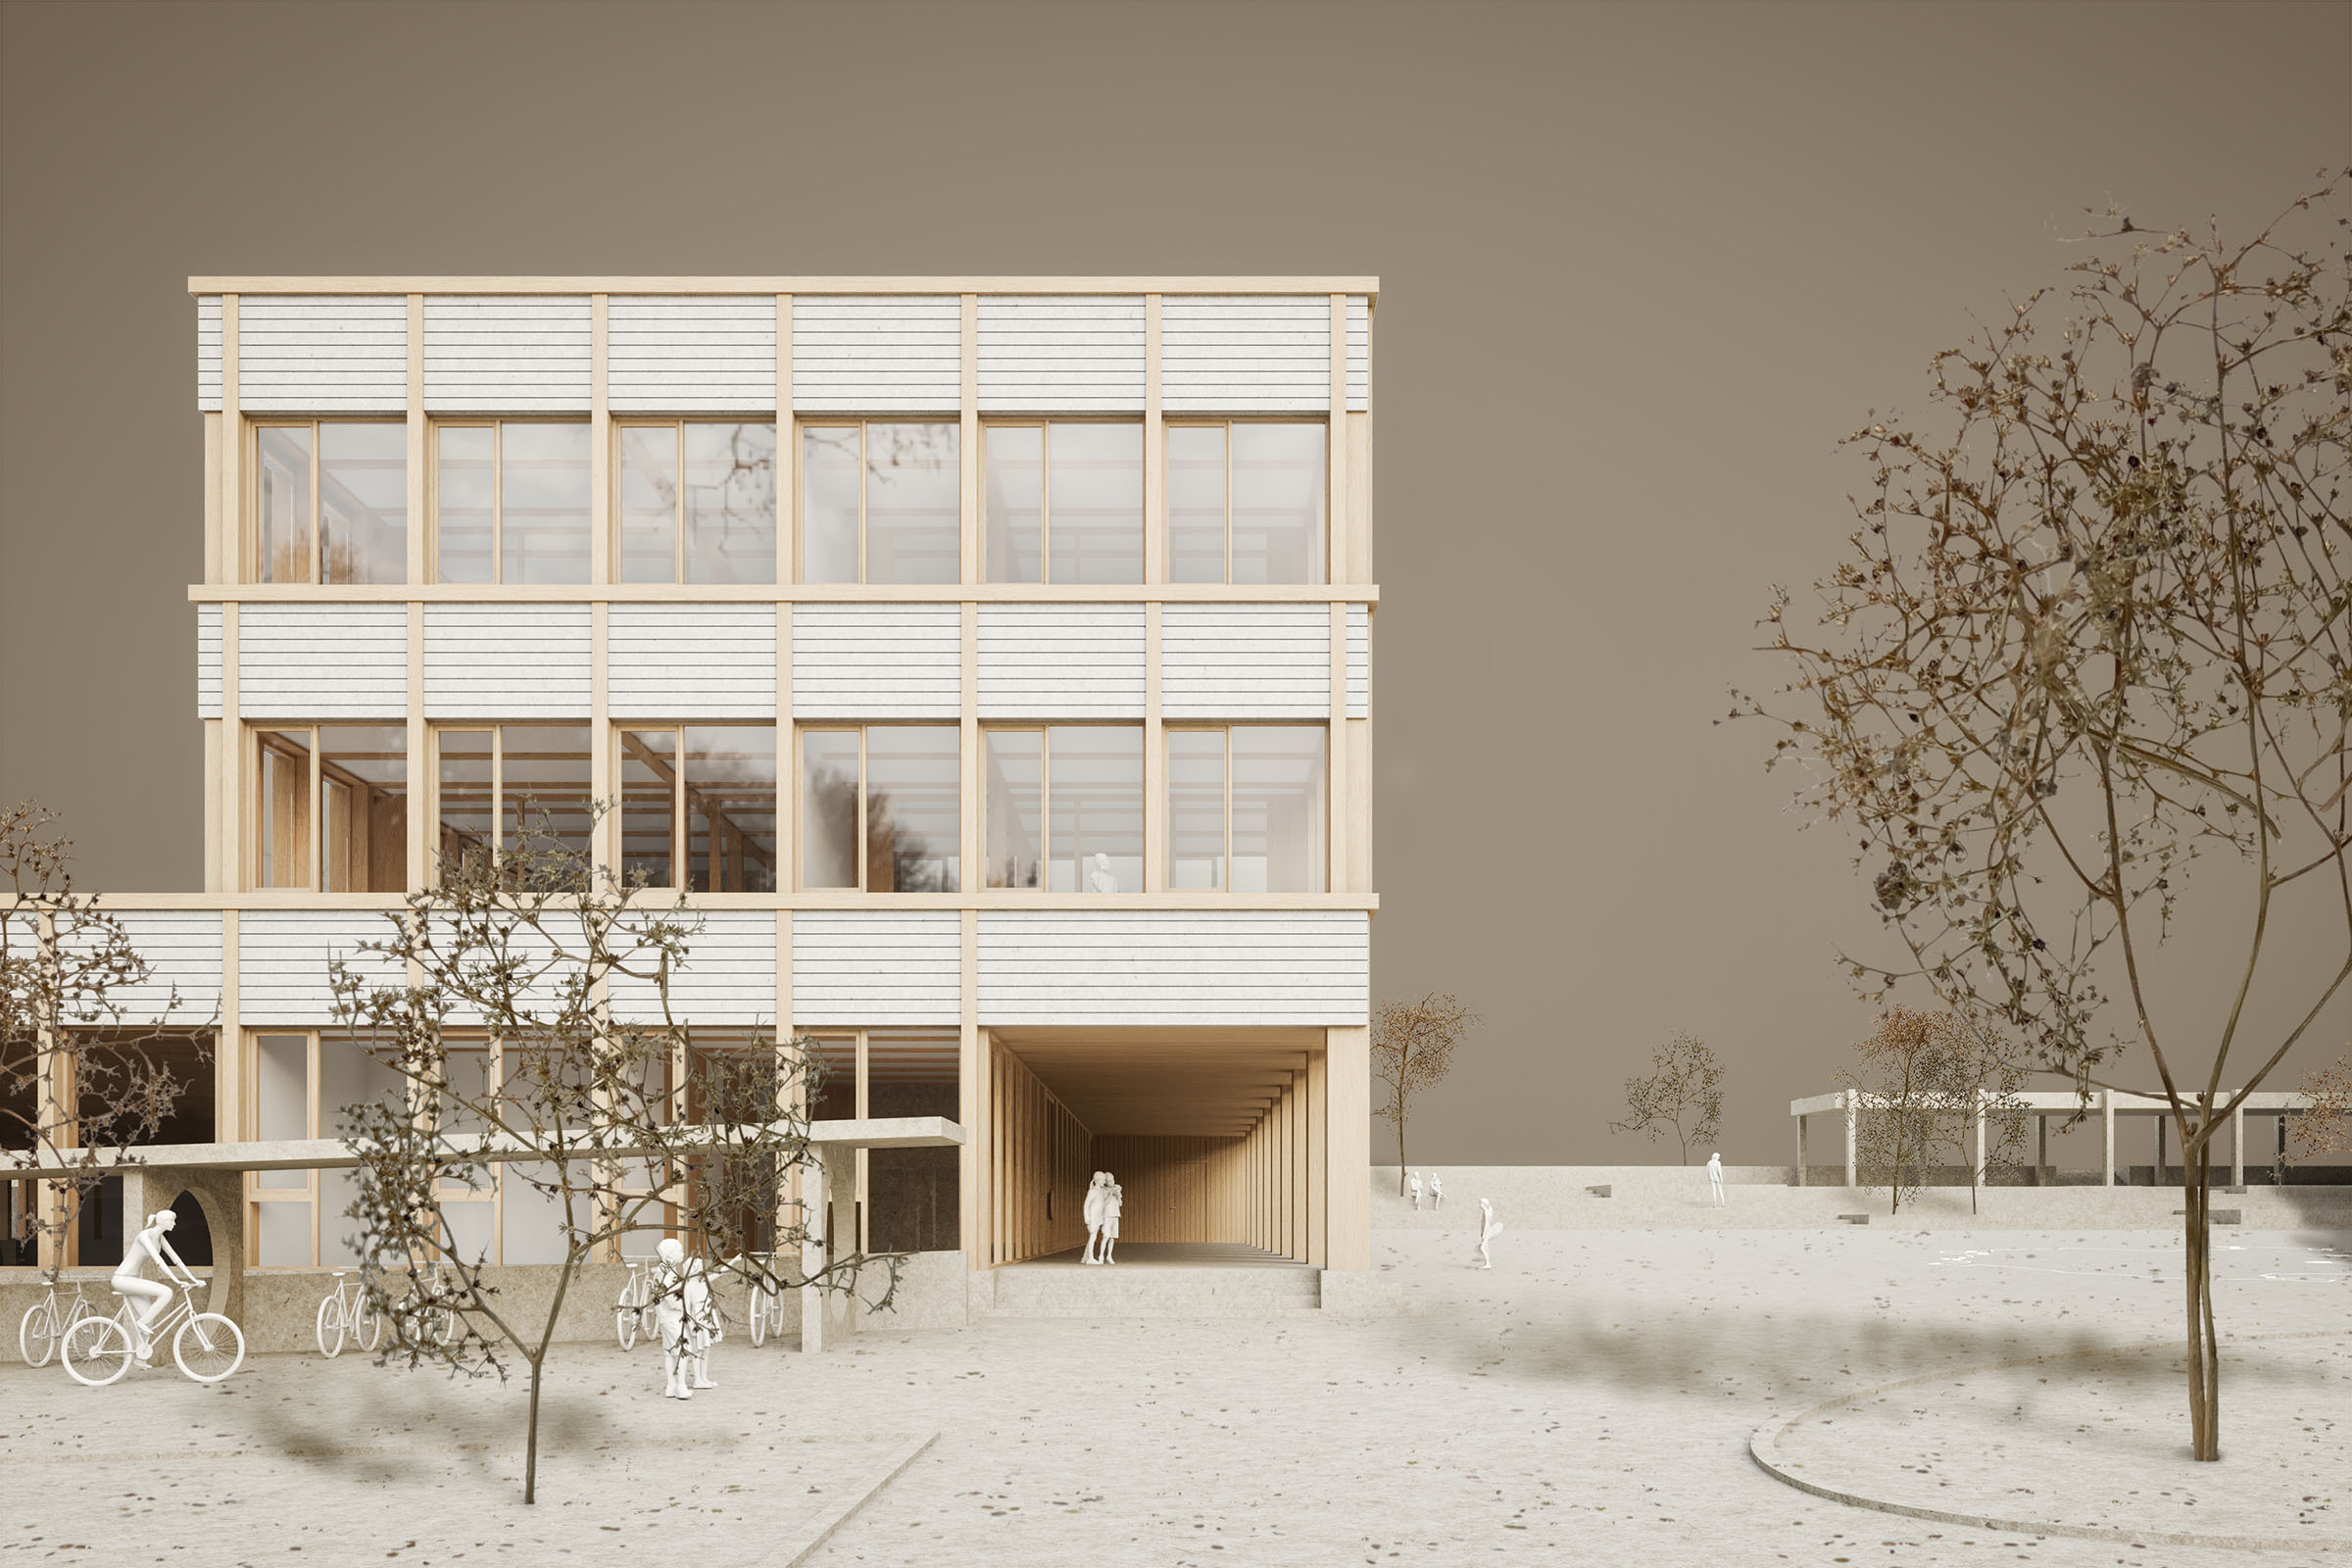  buan architekten-Wettbewerb Schulanlage Chilefeld Dagmersellen-Visualisierung